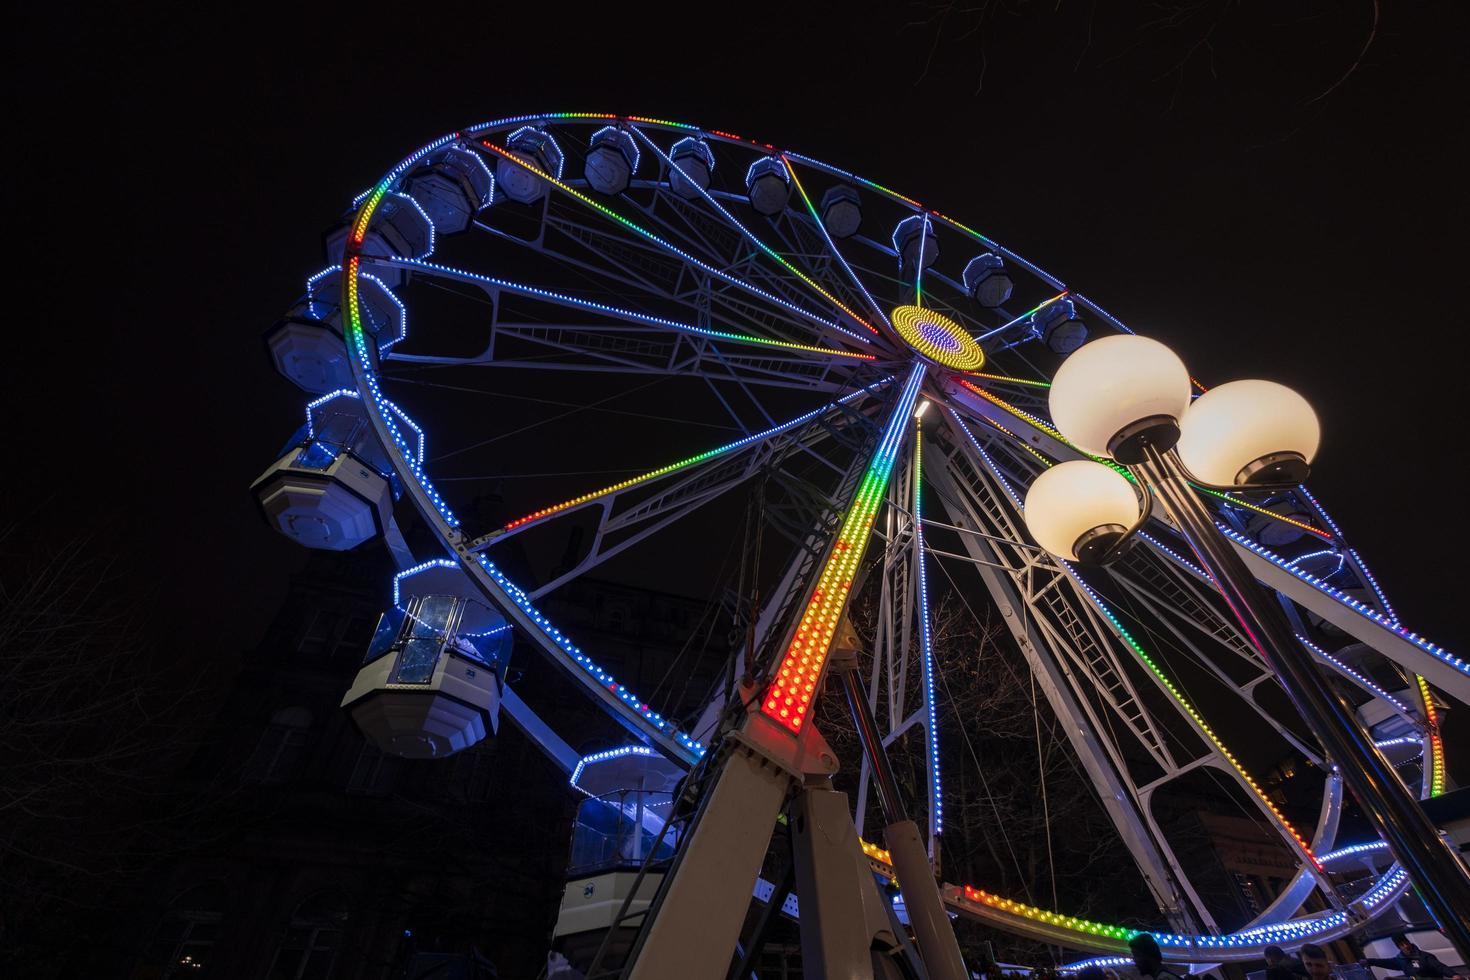 grande roue magnifiquement illuminée la nuit à leeds par la mairie de la ville. photo